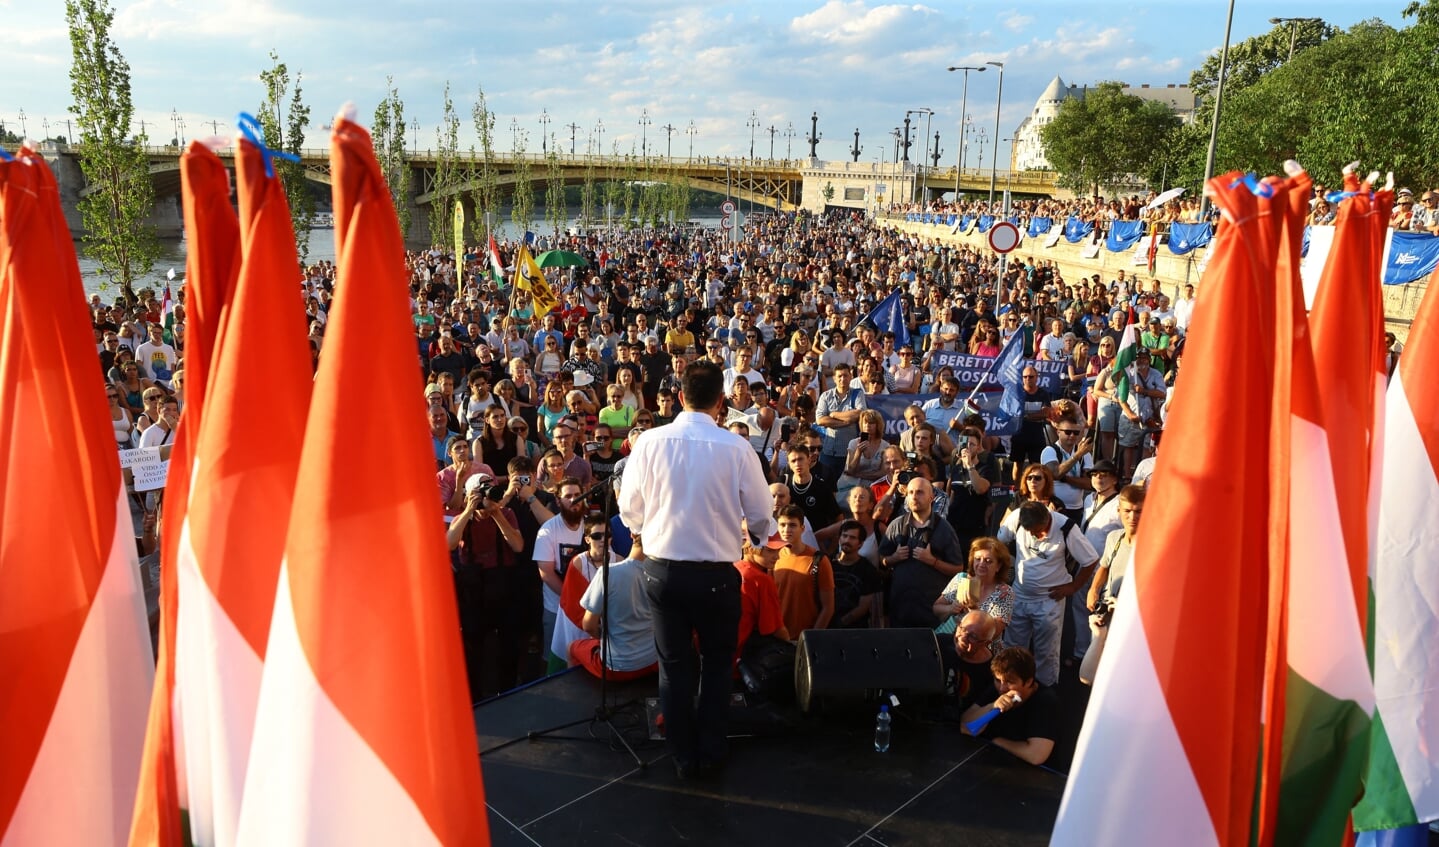 De belangrijkste politieke tegenstander van de Hongaarse premier Viktor Orbán, Péter Márki-Zay, spreekt in Boedapest een grote groep demonstranten toe die zich keren tegen de belastingverhogingen van de regering.